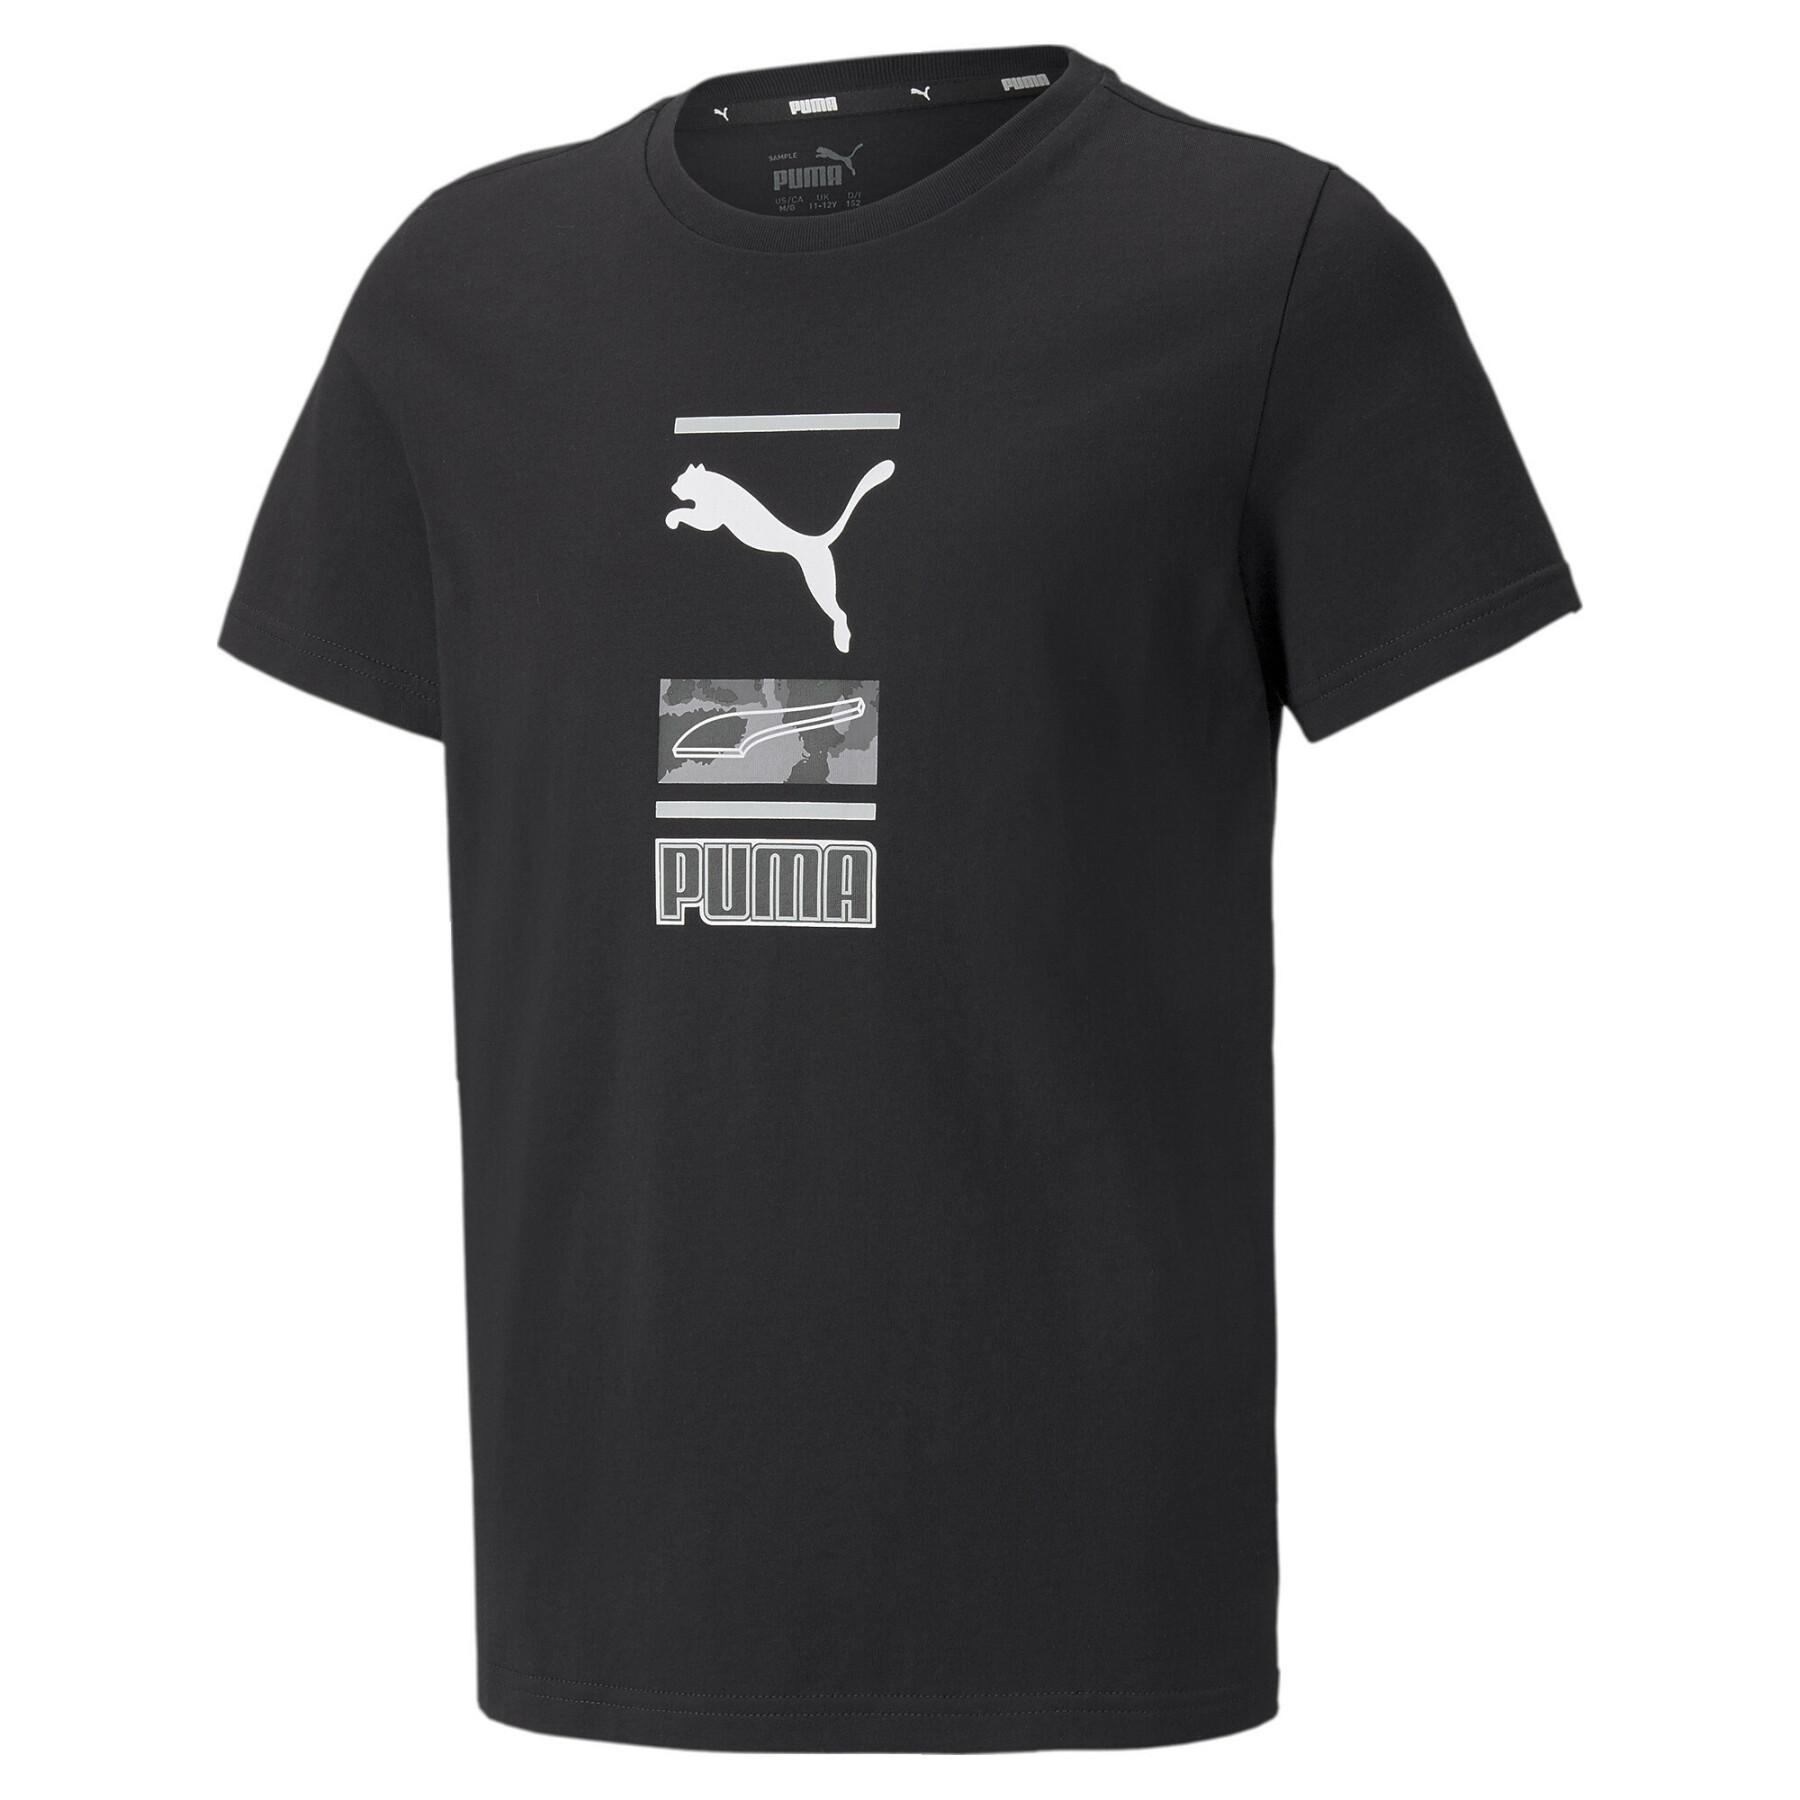 Camiseta para niños Puma Alpharaphic